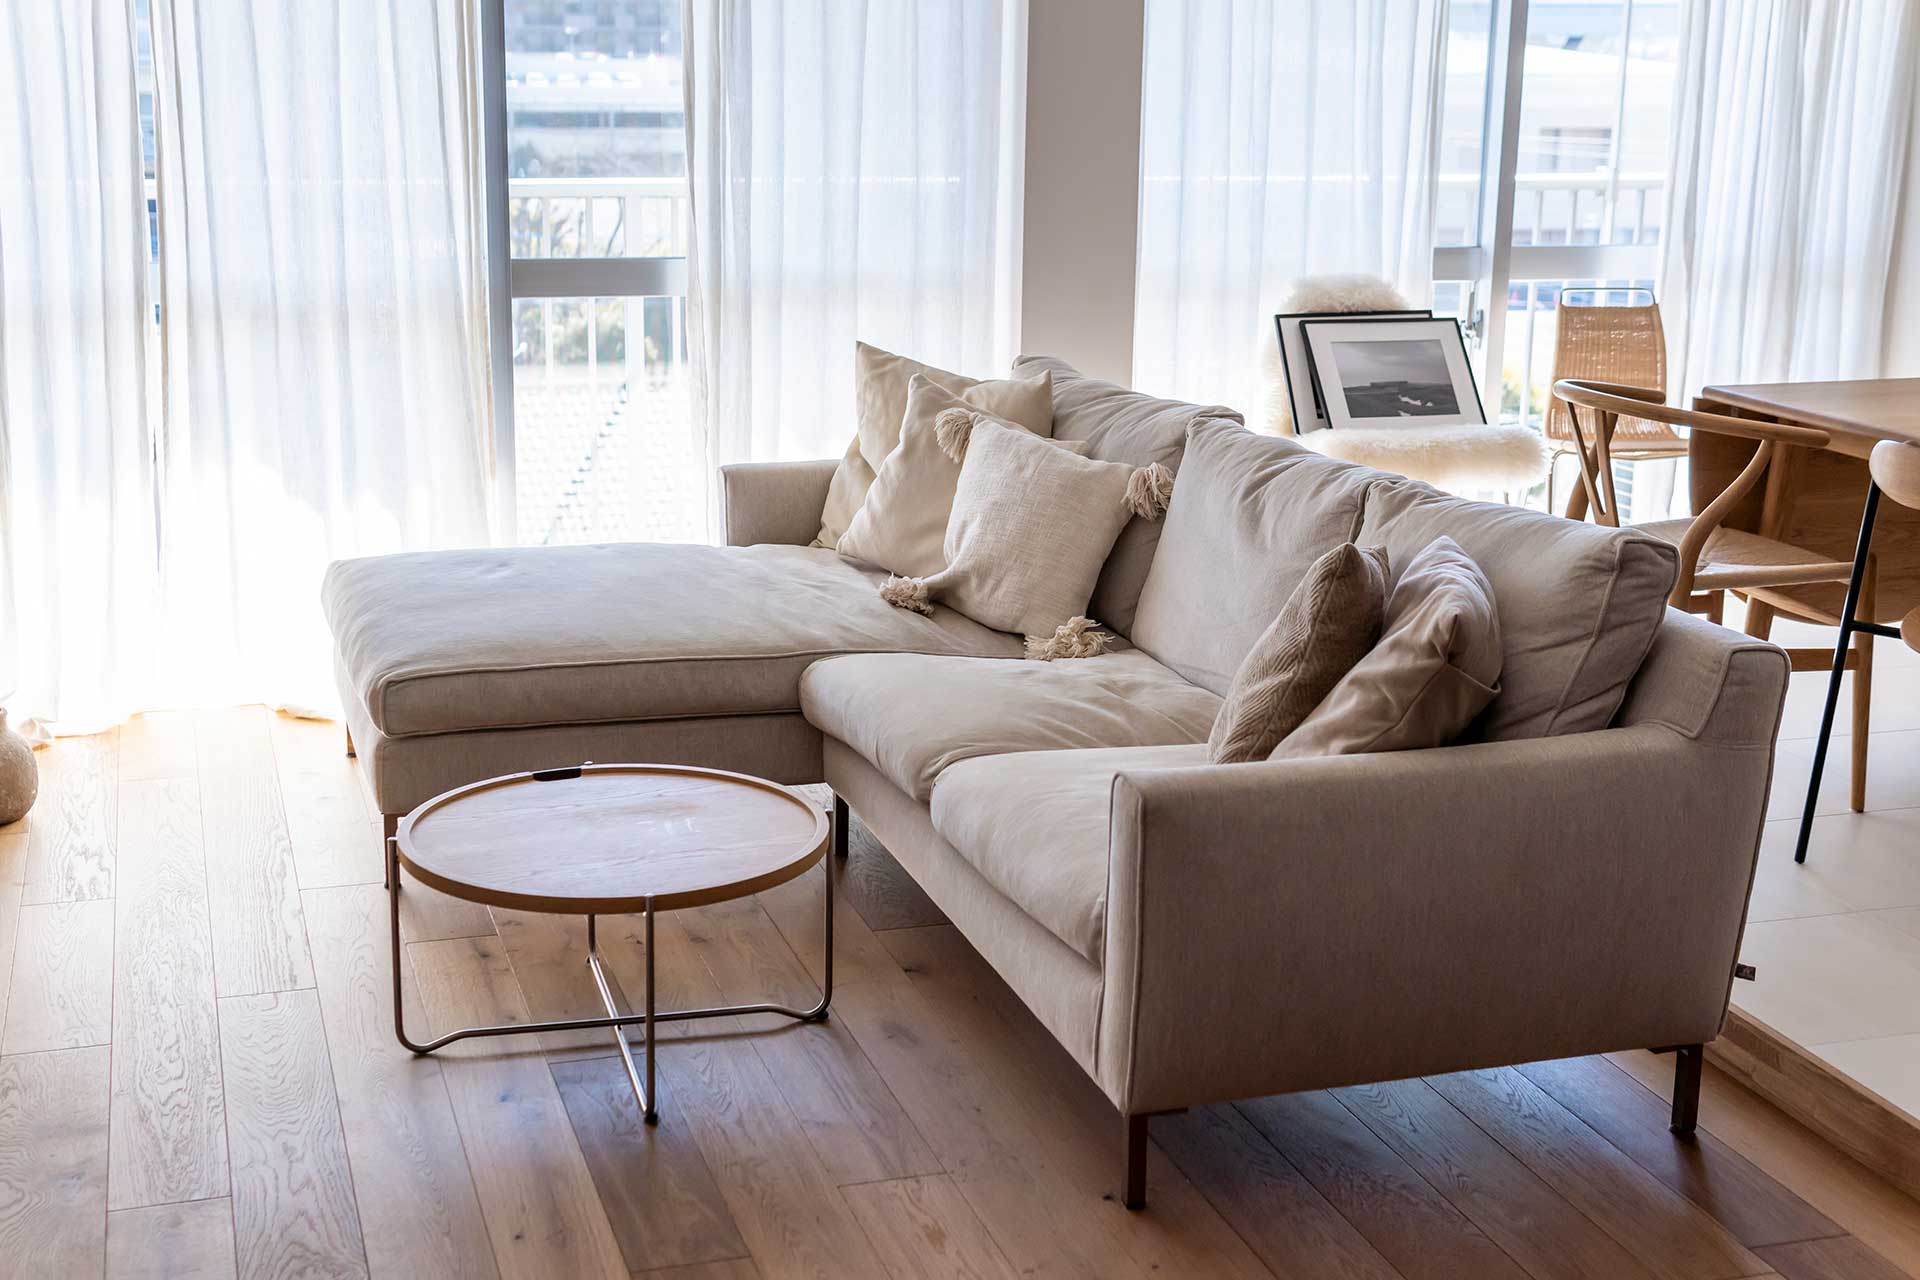 デンマークの家具ブランド「eilersen」のソファ。